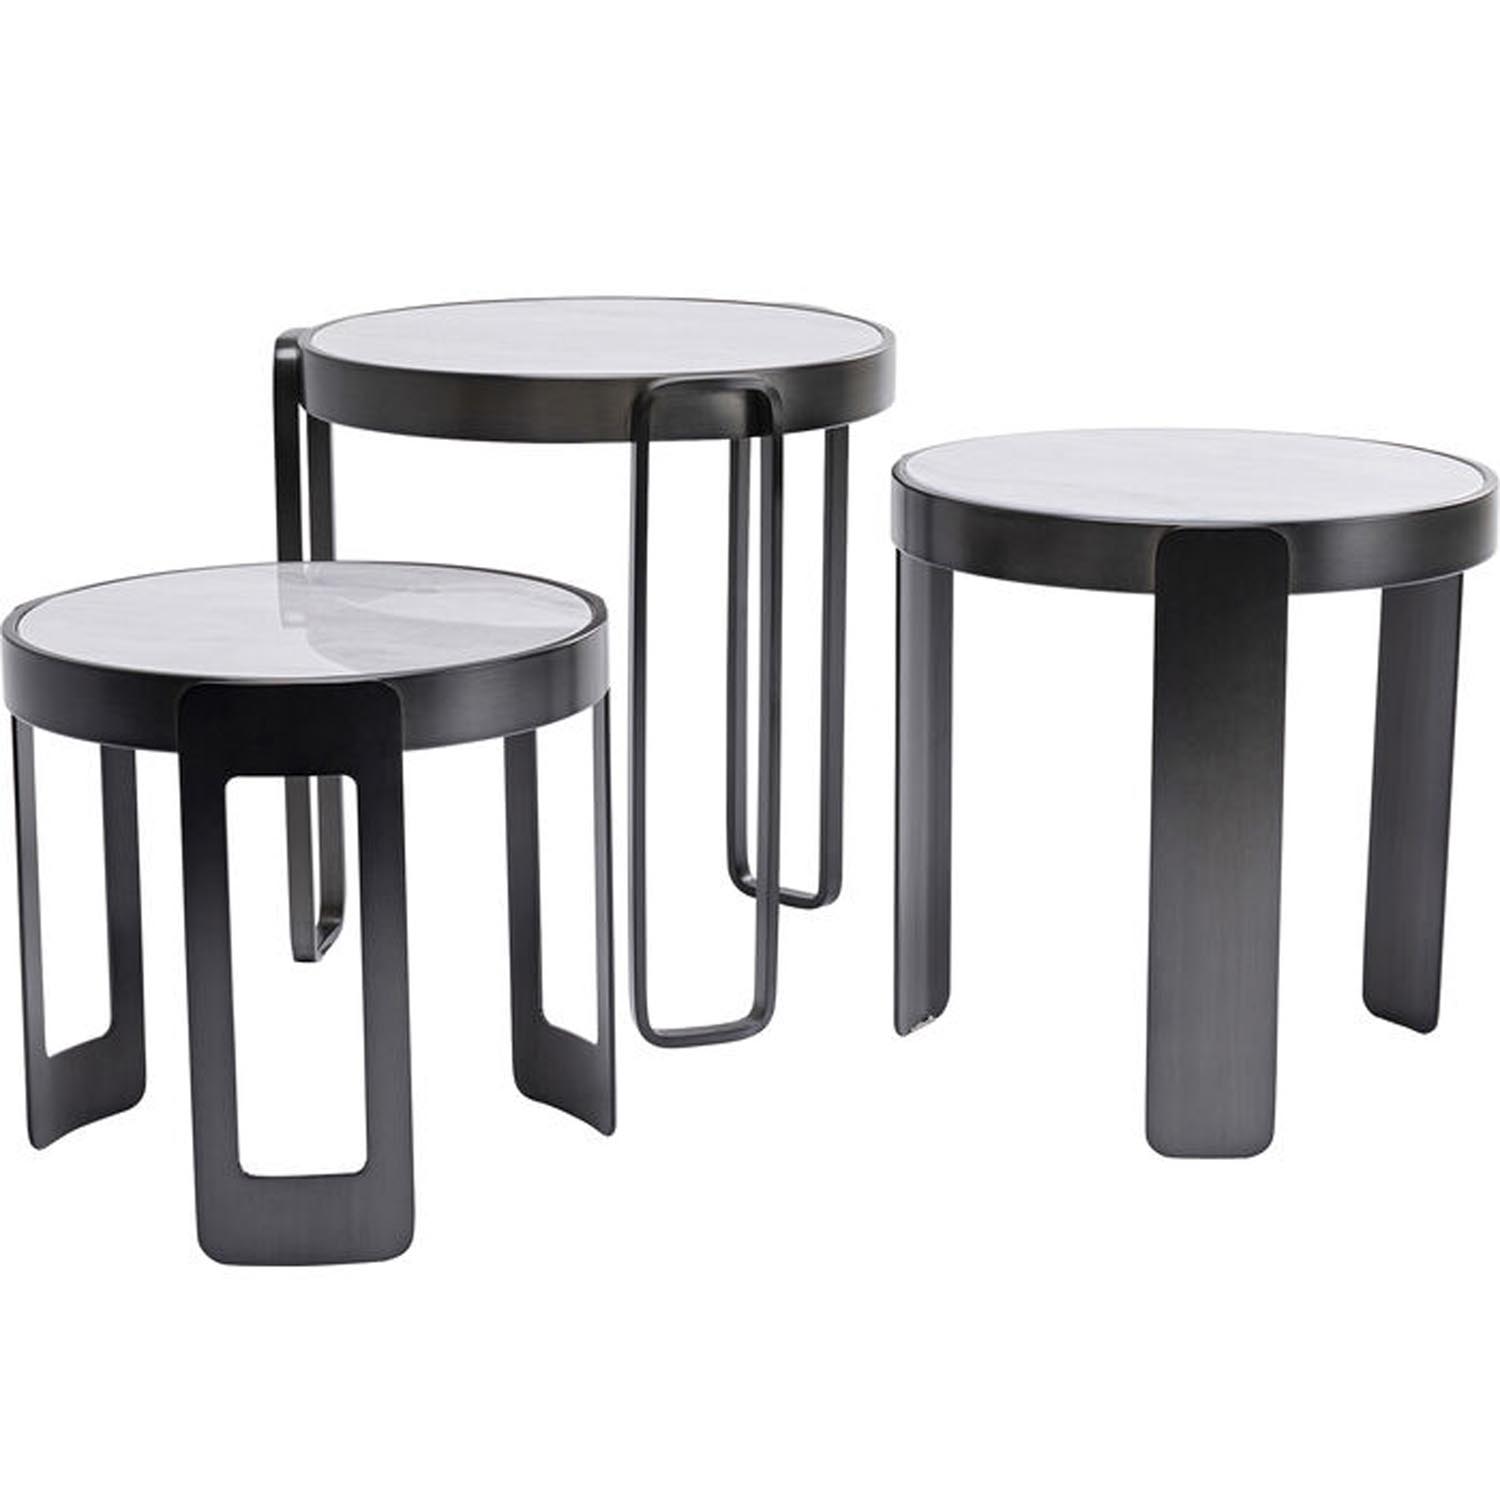 KARE DESIGN Perelli Black sofabord, rund - hvid marmorprint glas og sort stål (sæt af 3)